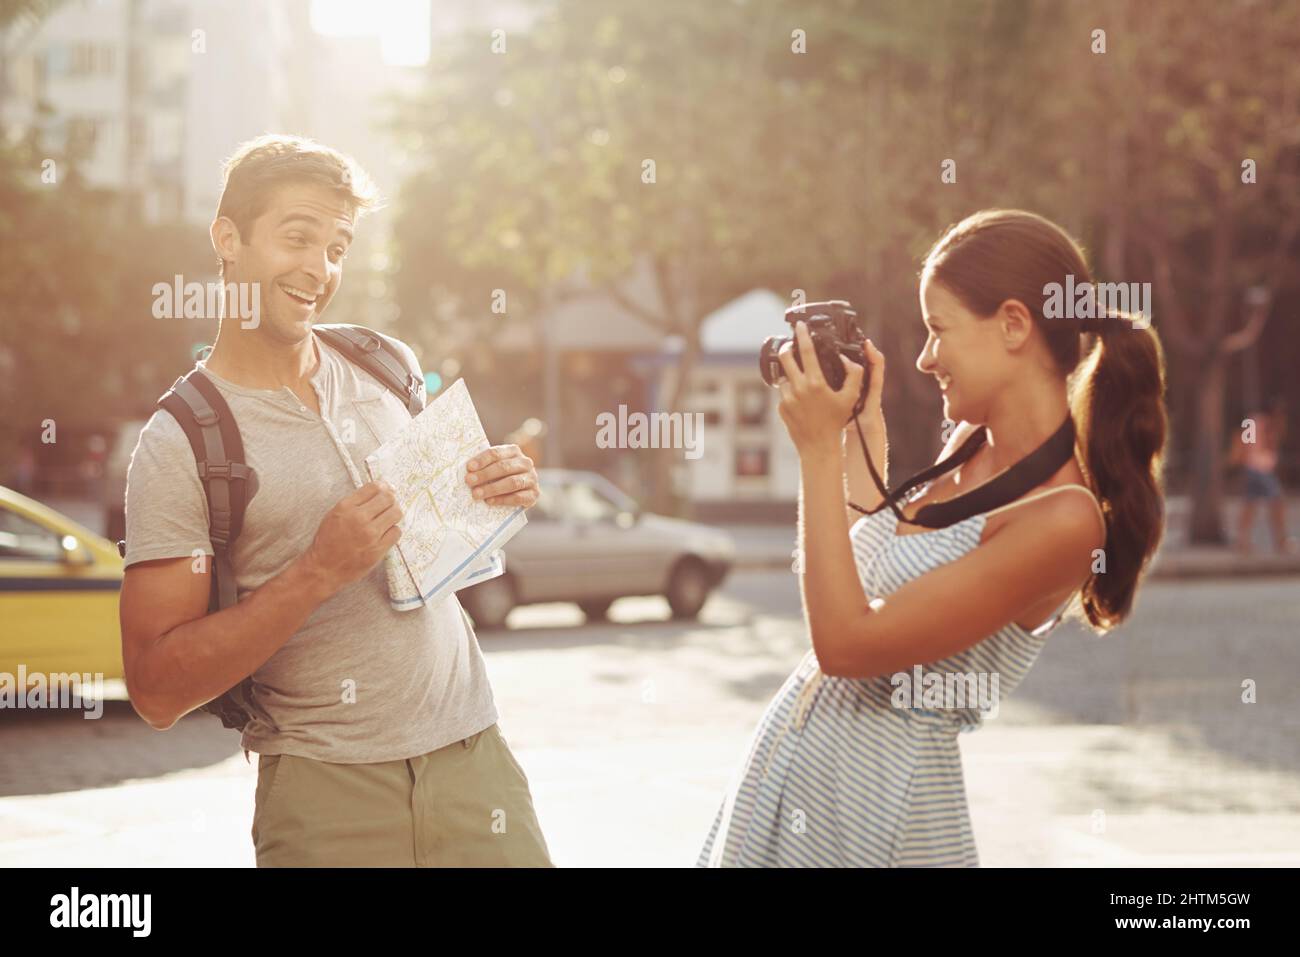 Schnelle Momentaufnahme im Urlaub. Eine kurze Aufnahme eines jungen Paares, das Spaß hat, während er eine fremde Stadt bereist. Stockfoto